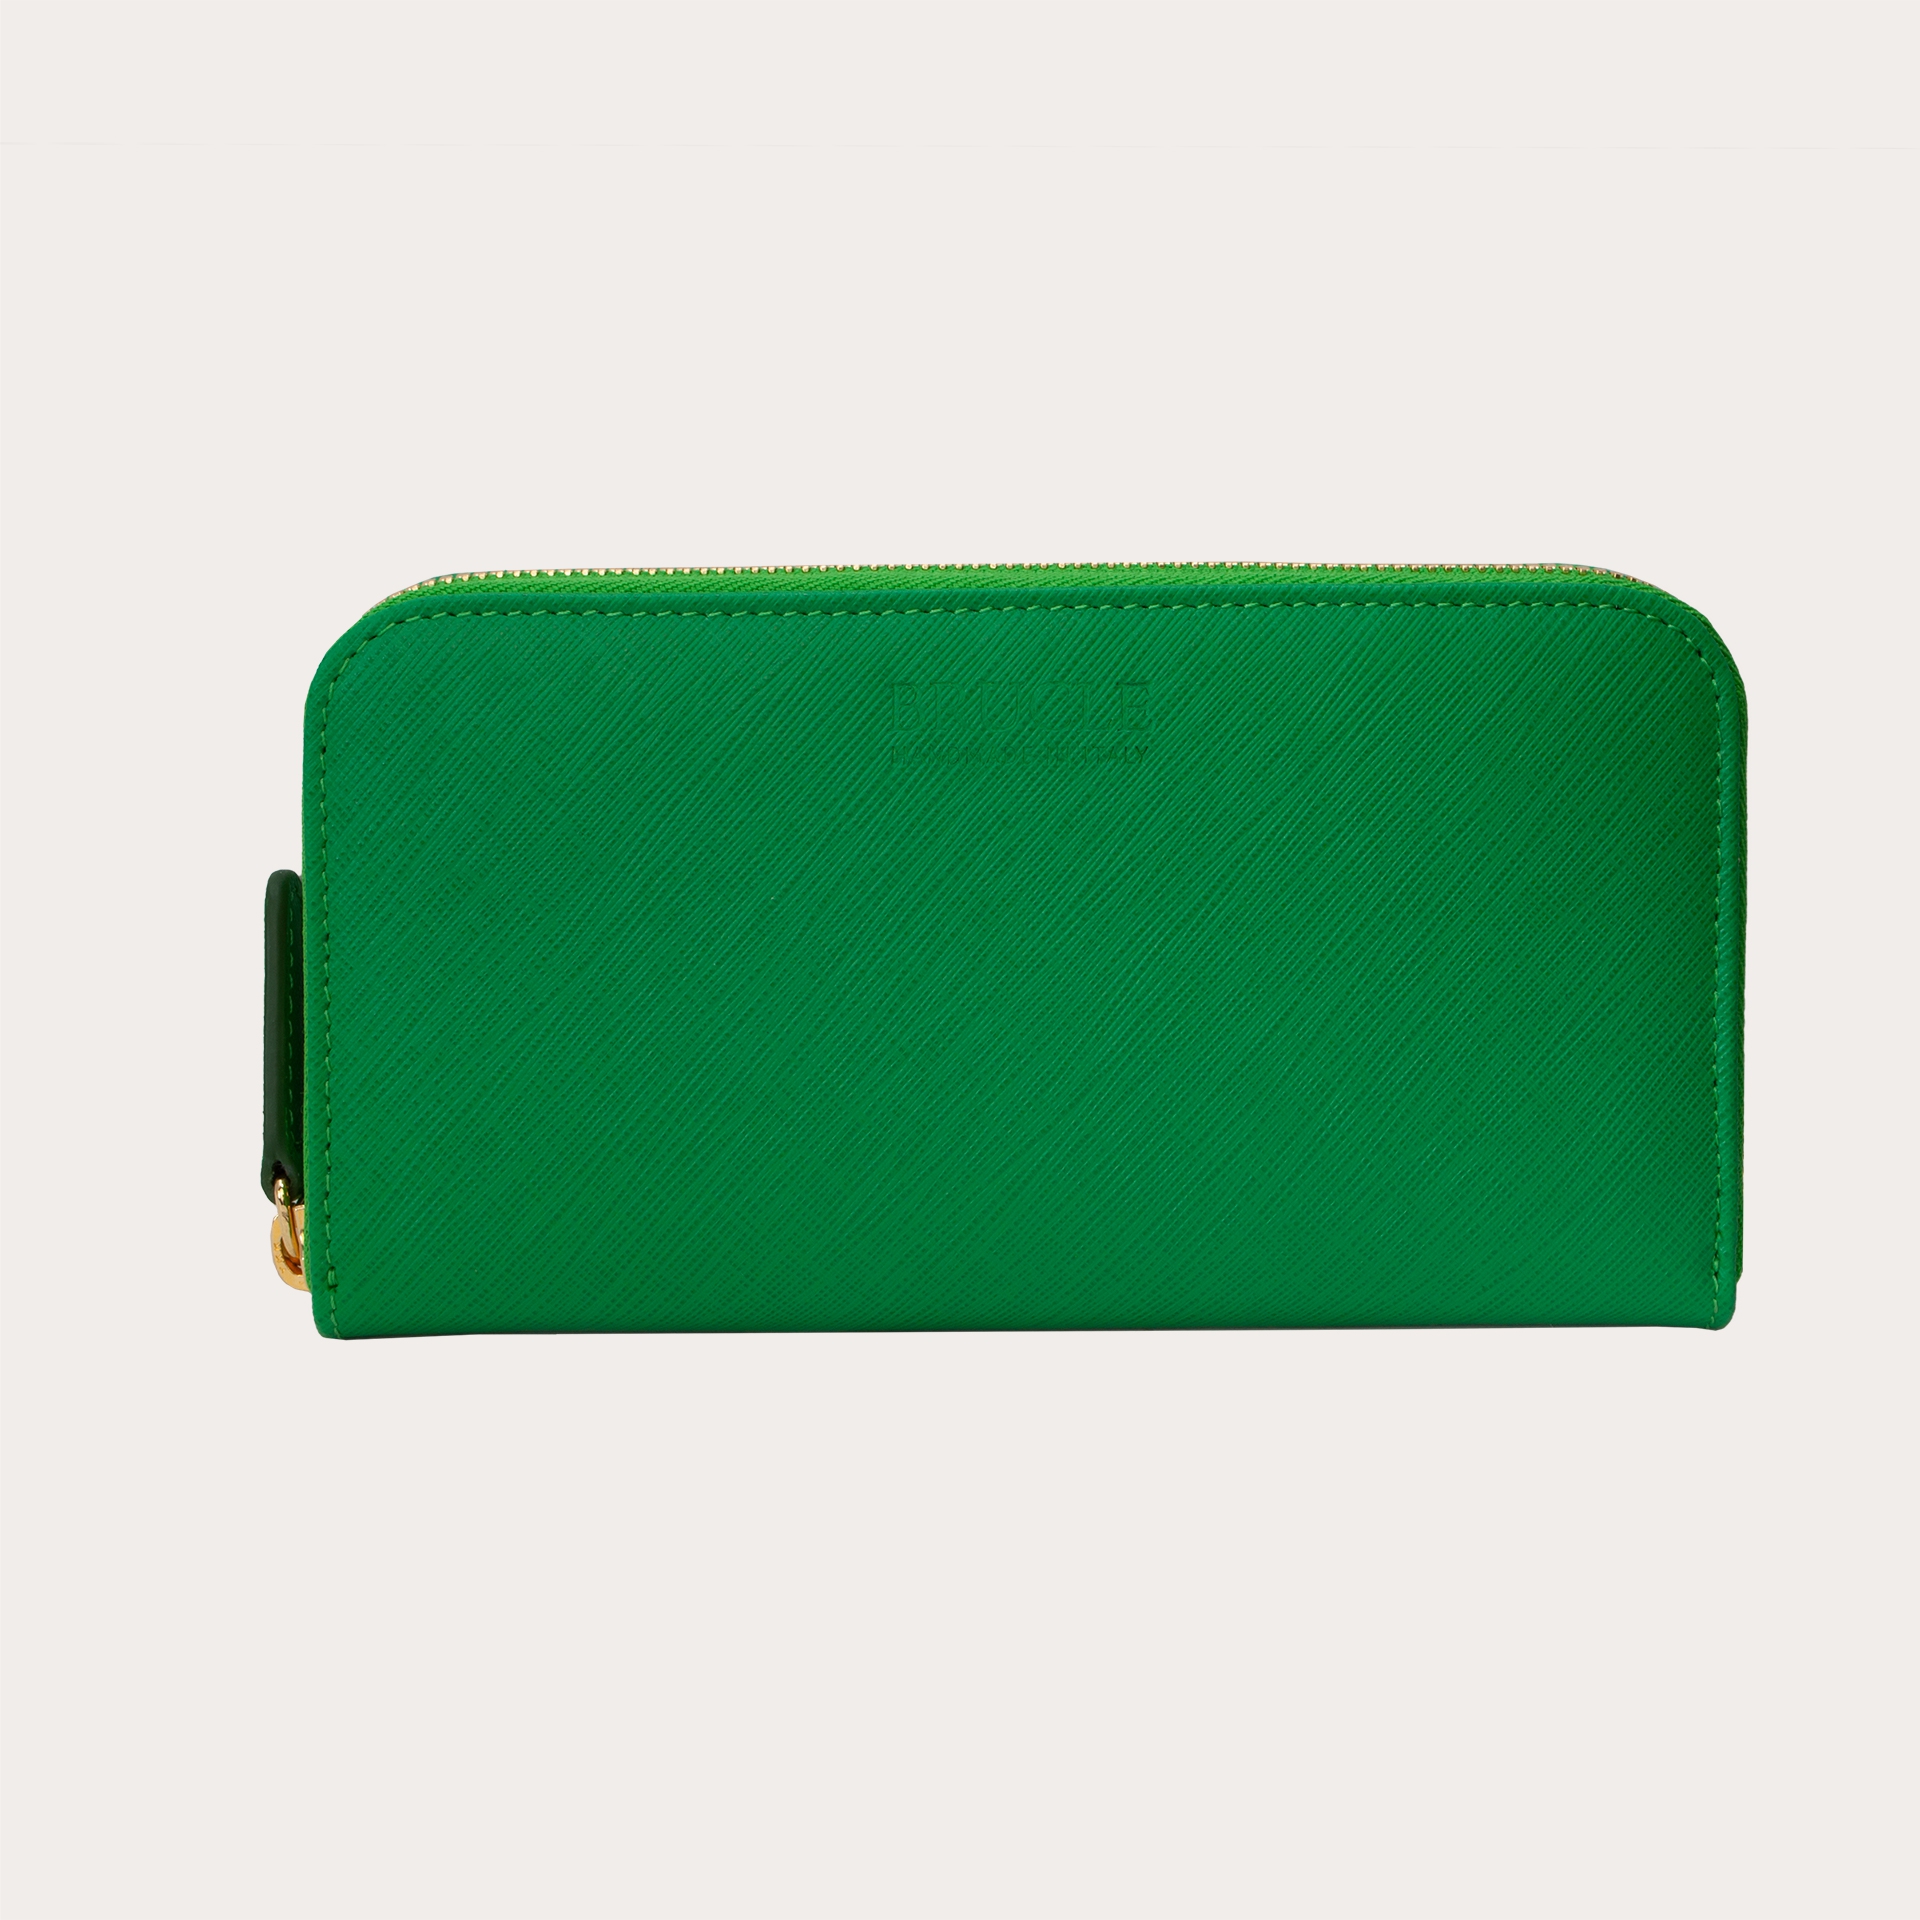 BRUCLE Damen Portemonnaie mit Saffiano-Druck und goldenem Reißverschluss, Smaragdgrün